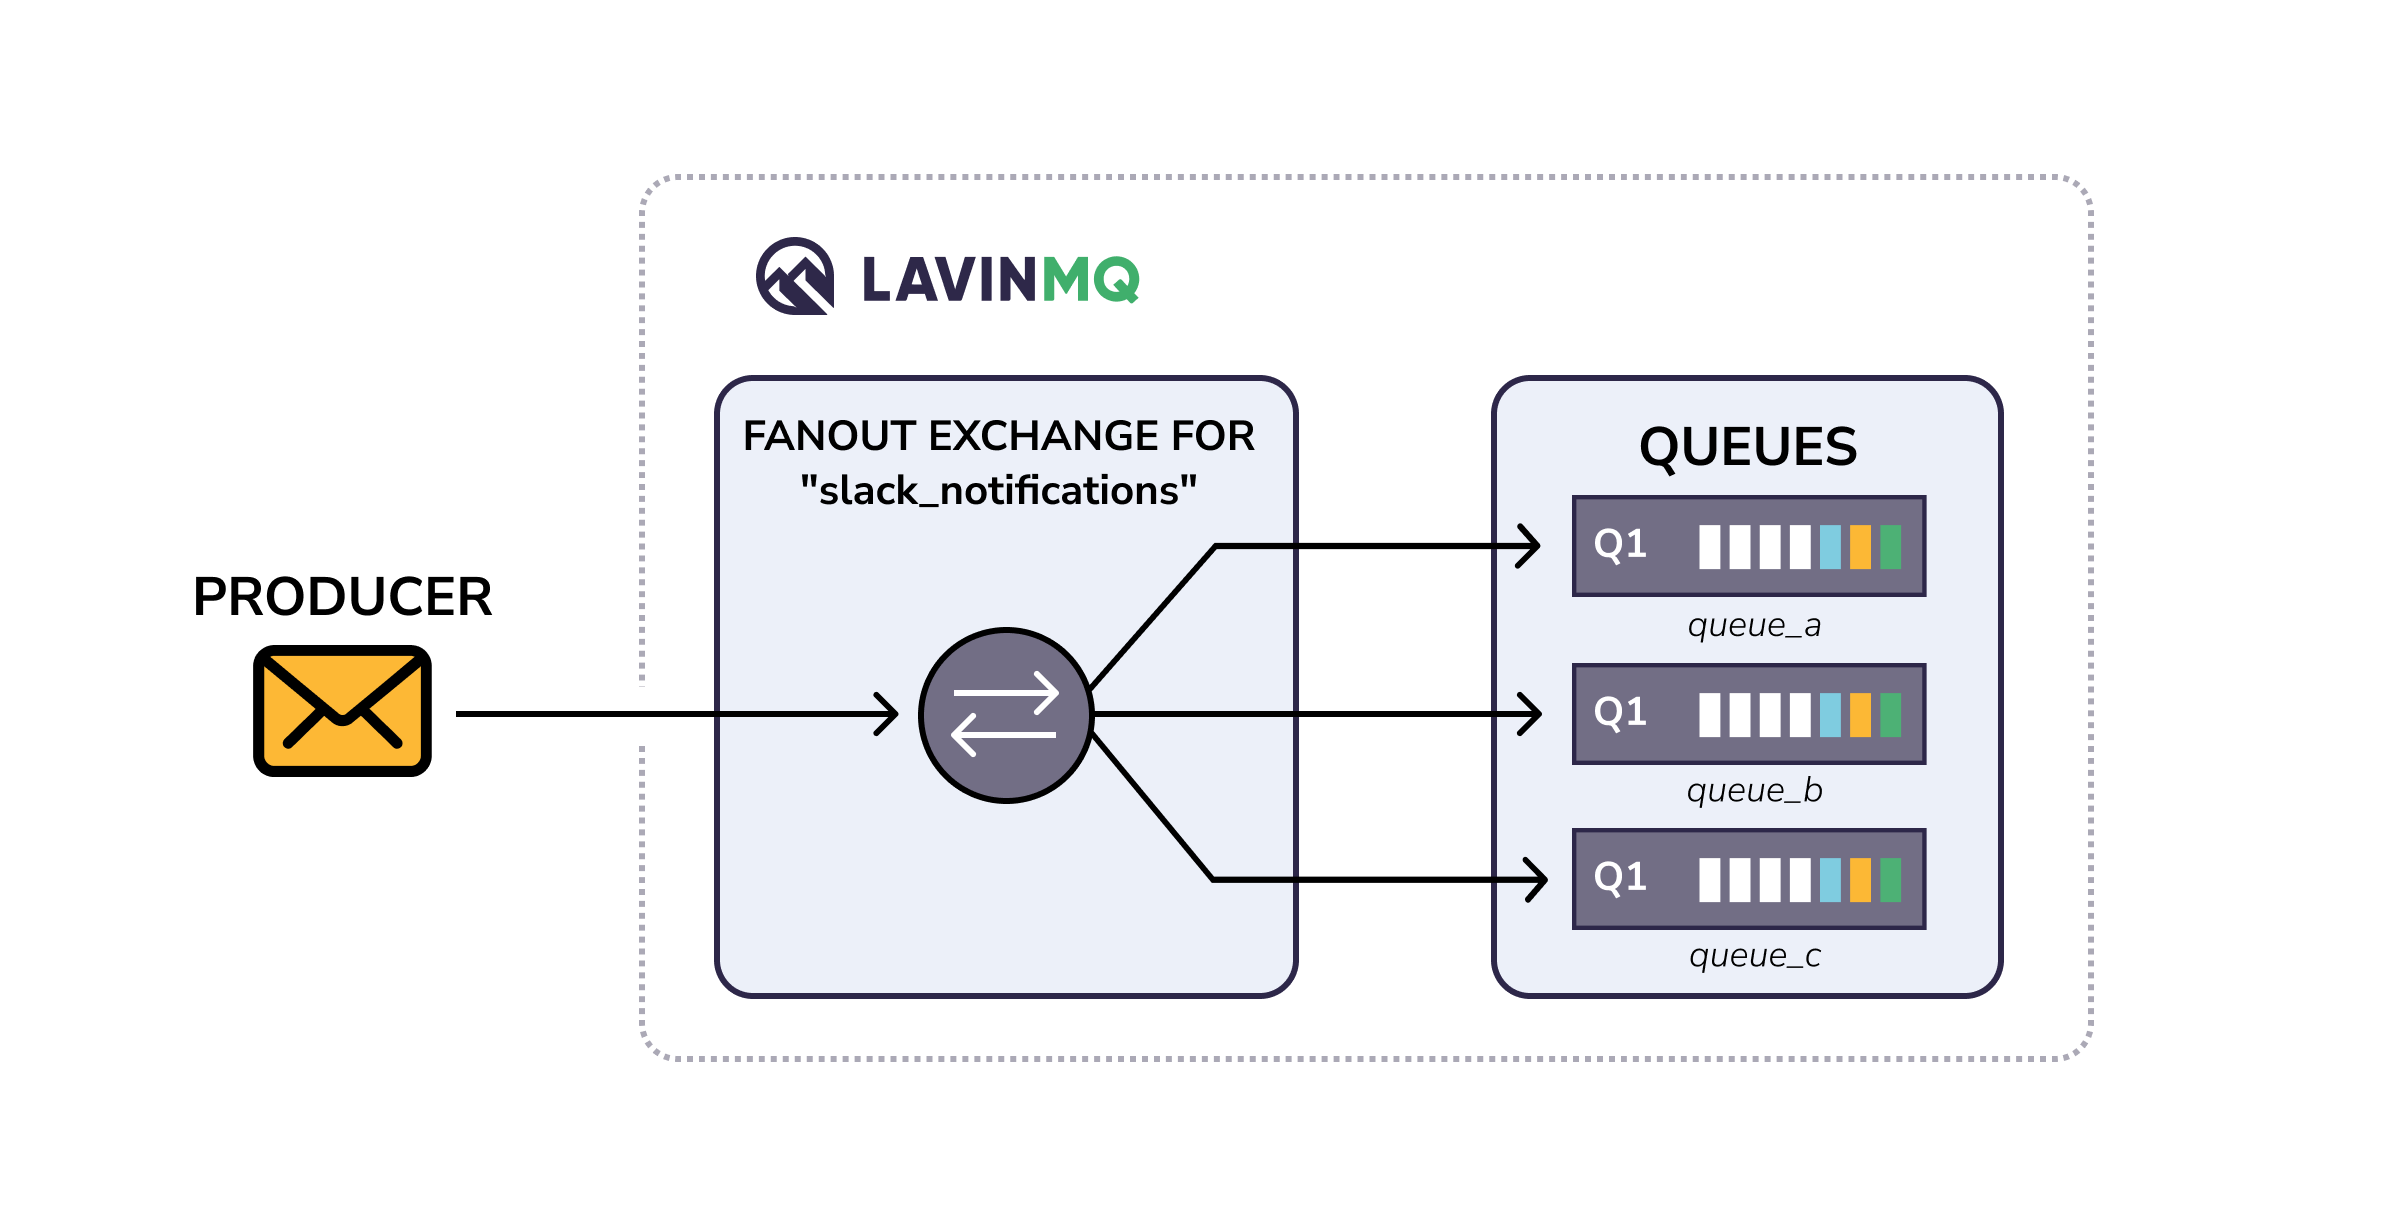 LavinMQ fanout exchange